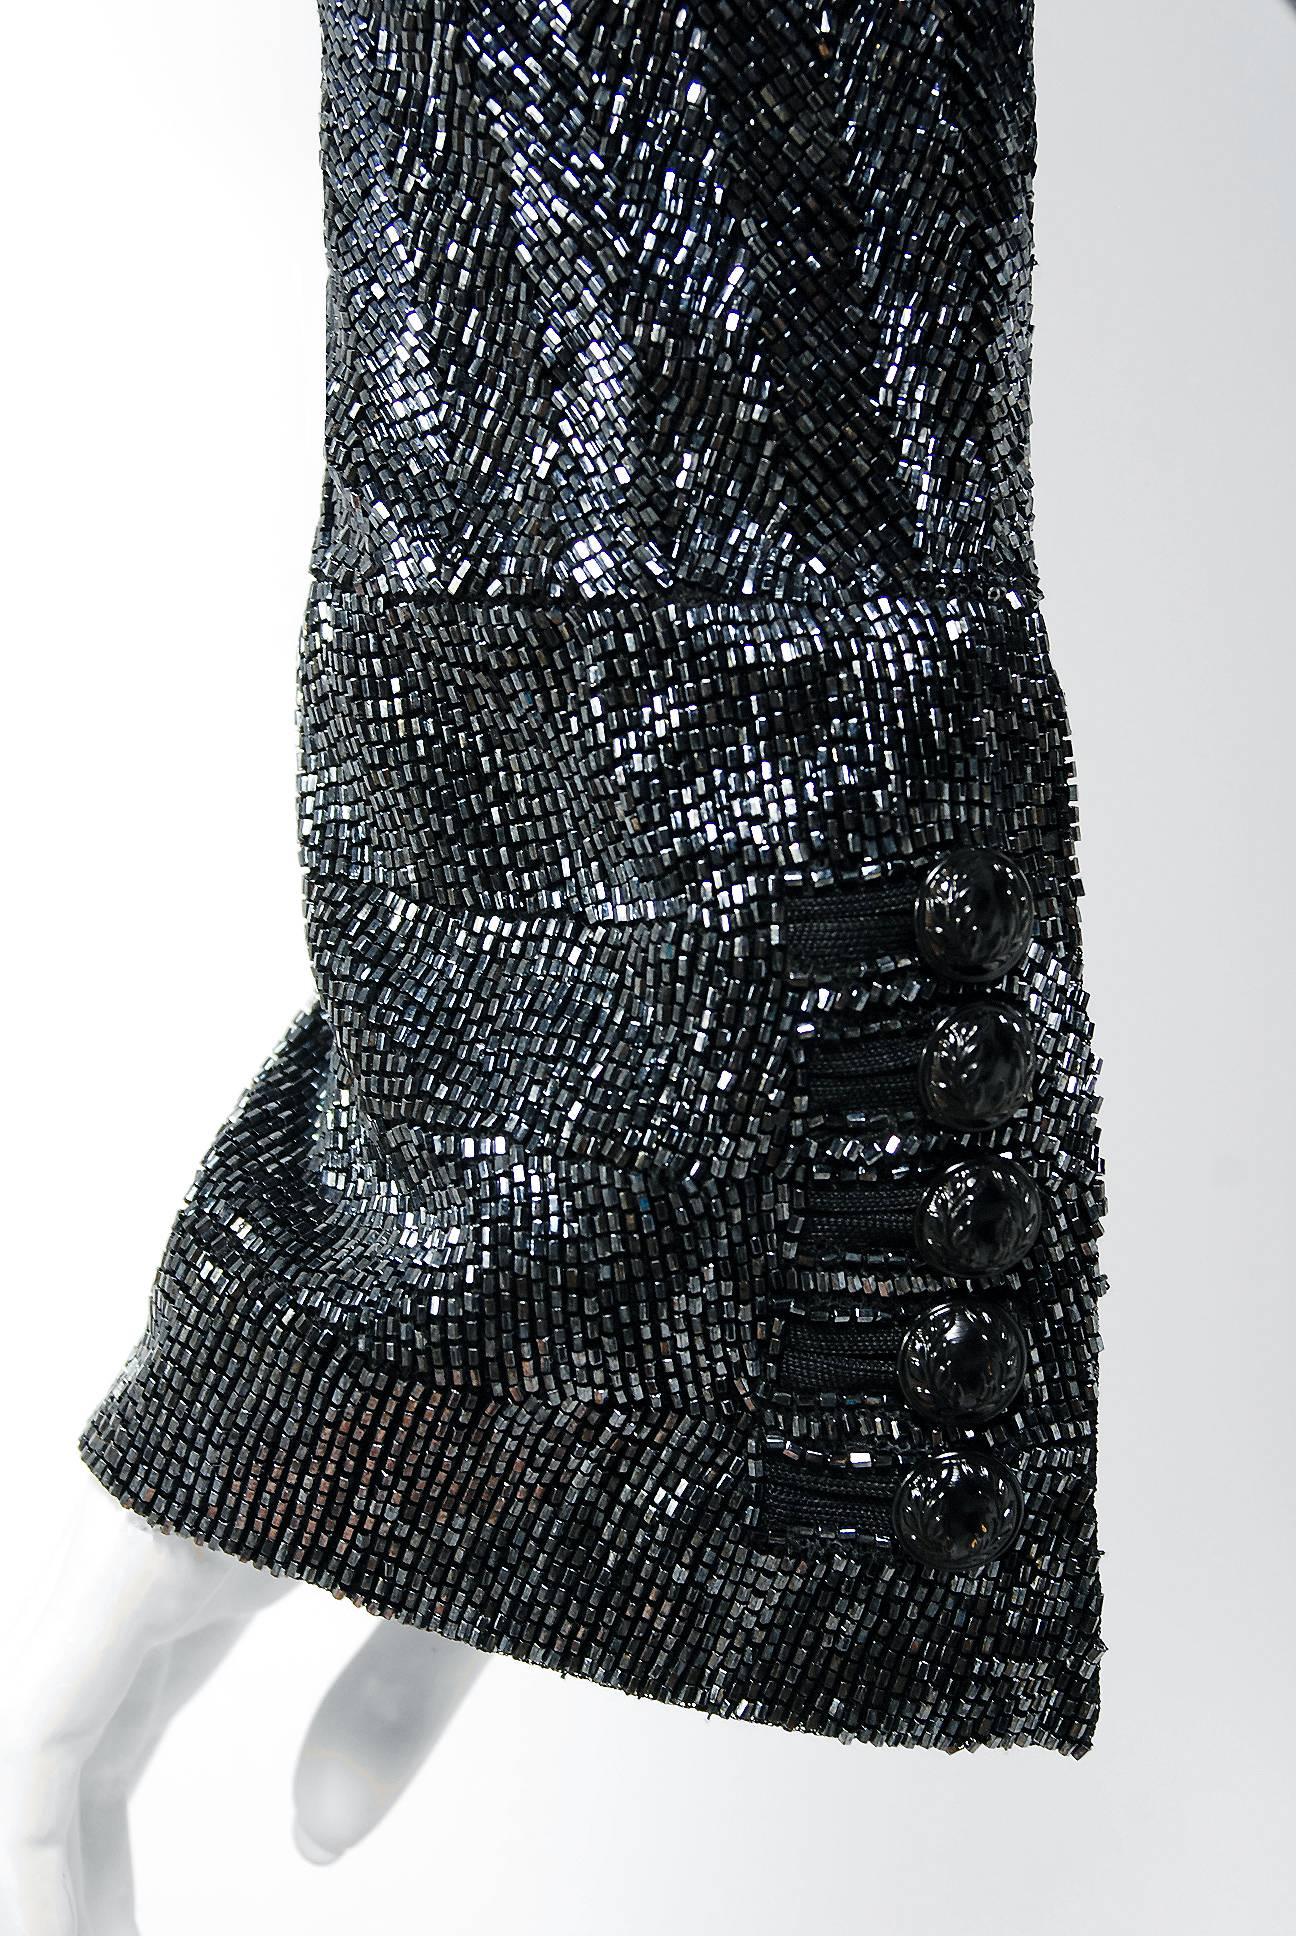 Women's 2005 Balenciaga Runway Couture Lesage Beaded Black Sculpted Tuxedo Blazer Jacket